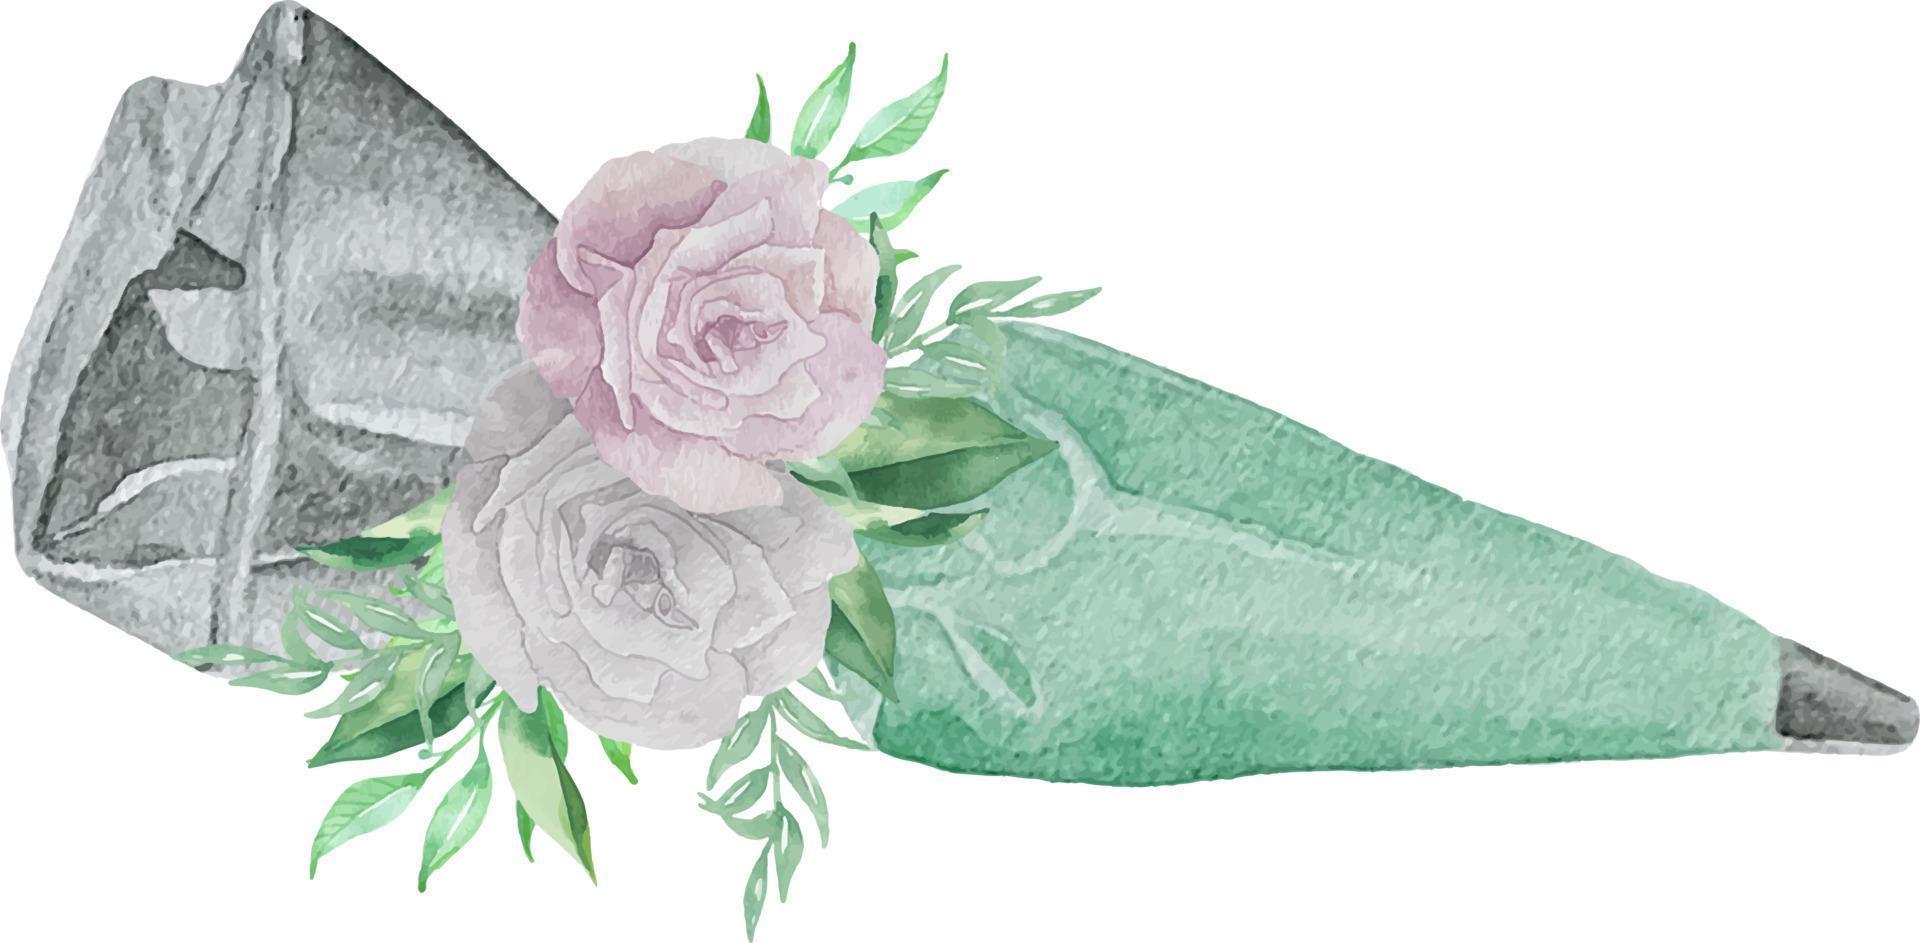 aquarellillustration von spritzbeutel und spitze mit minz-türkis-gebäckcreme und blumen mit grün. bäckereiillustration für einladung, gebäck, menü, logos vektor